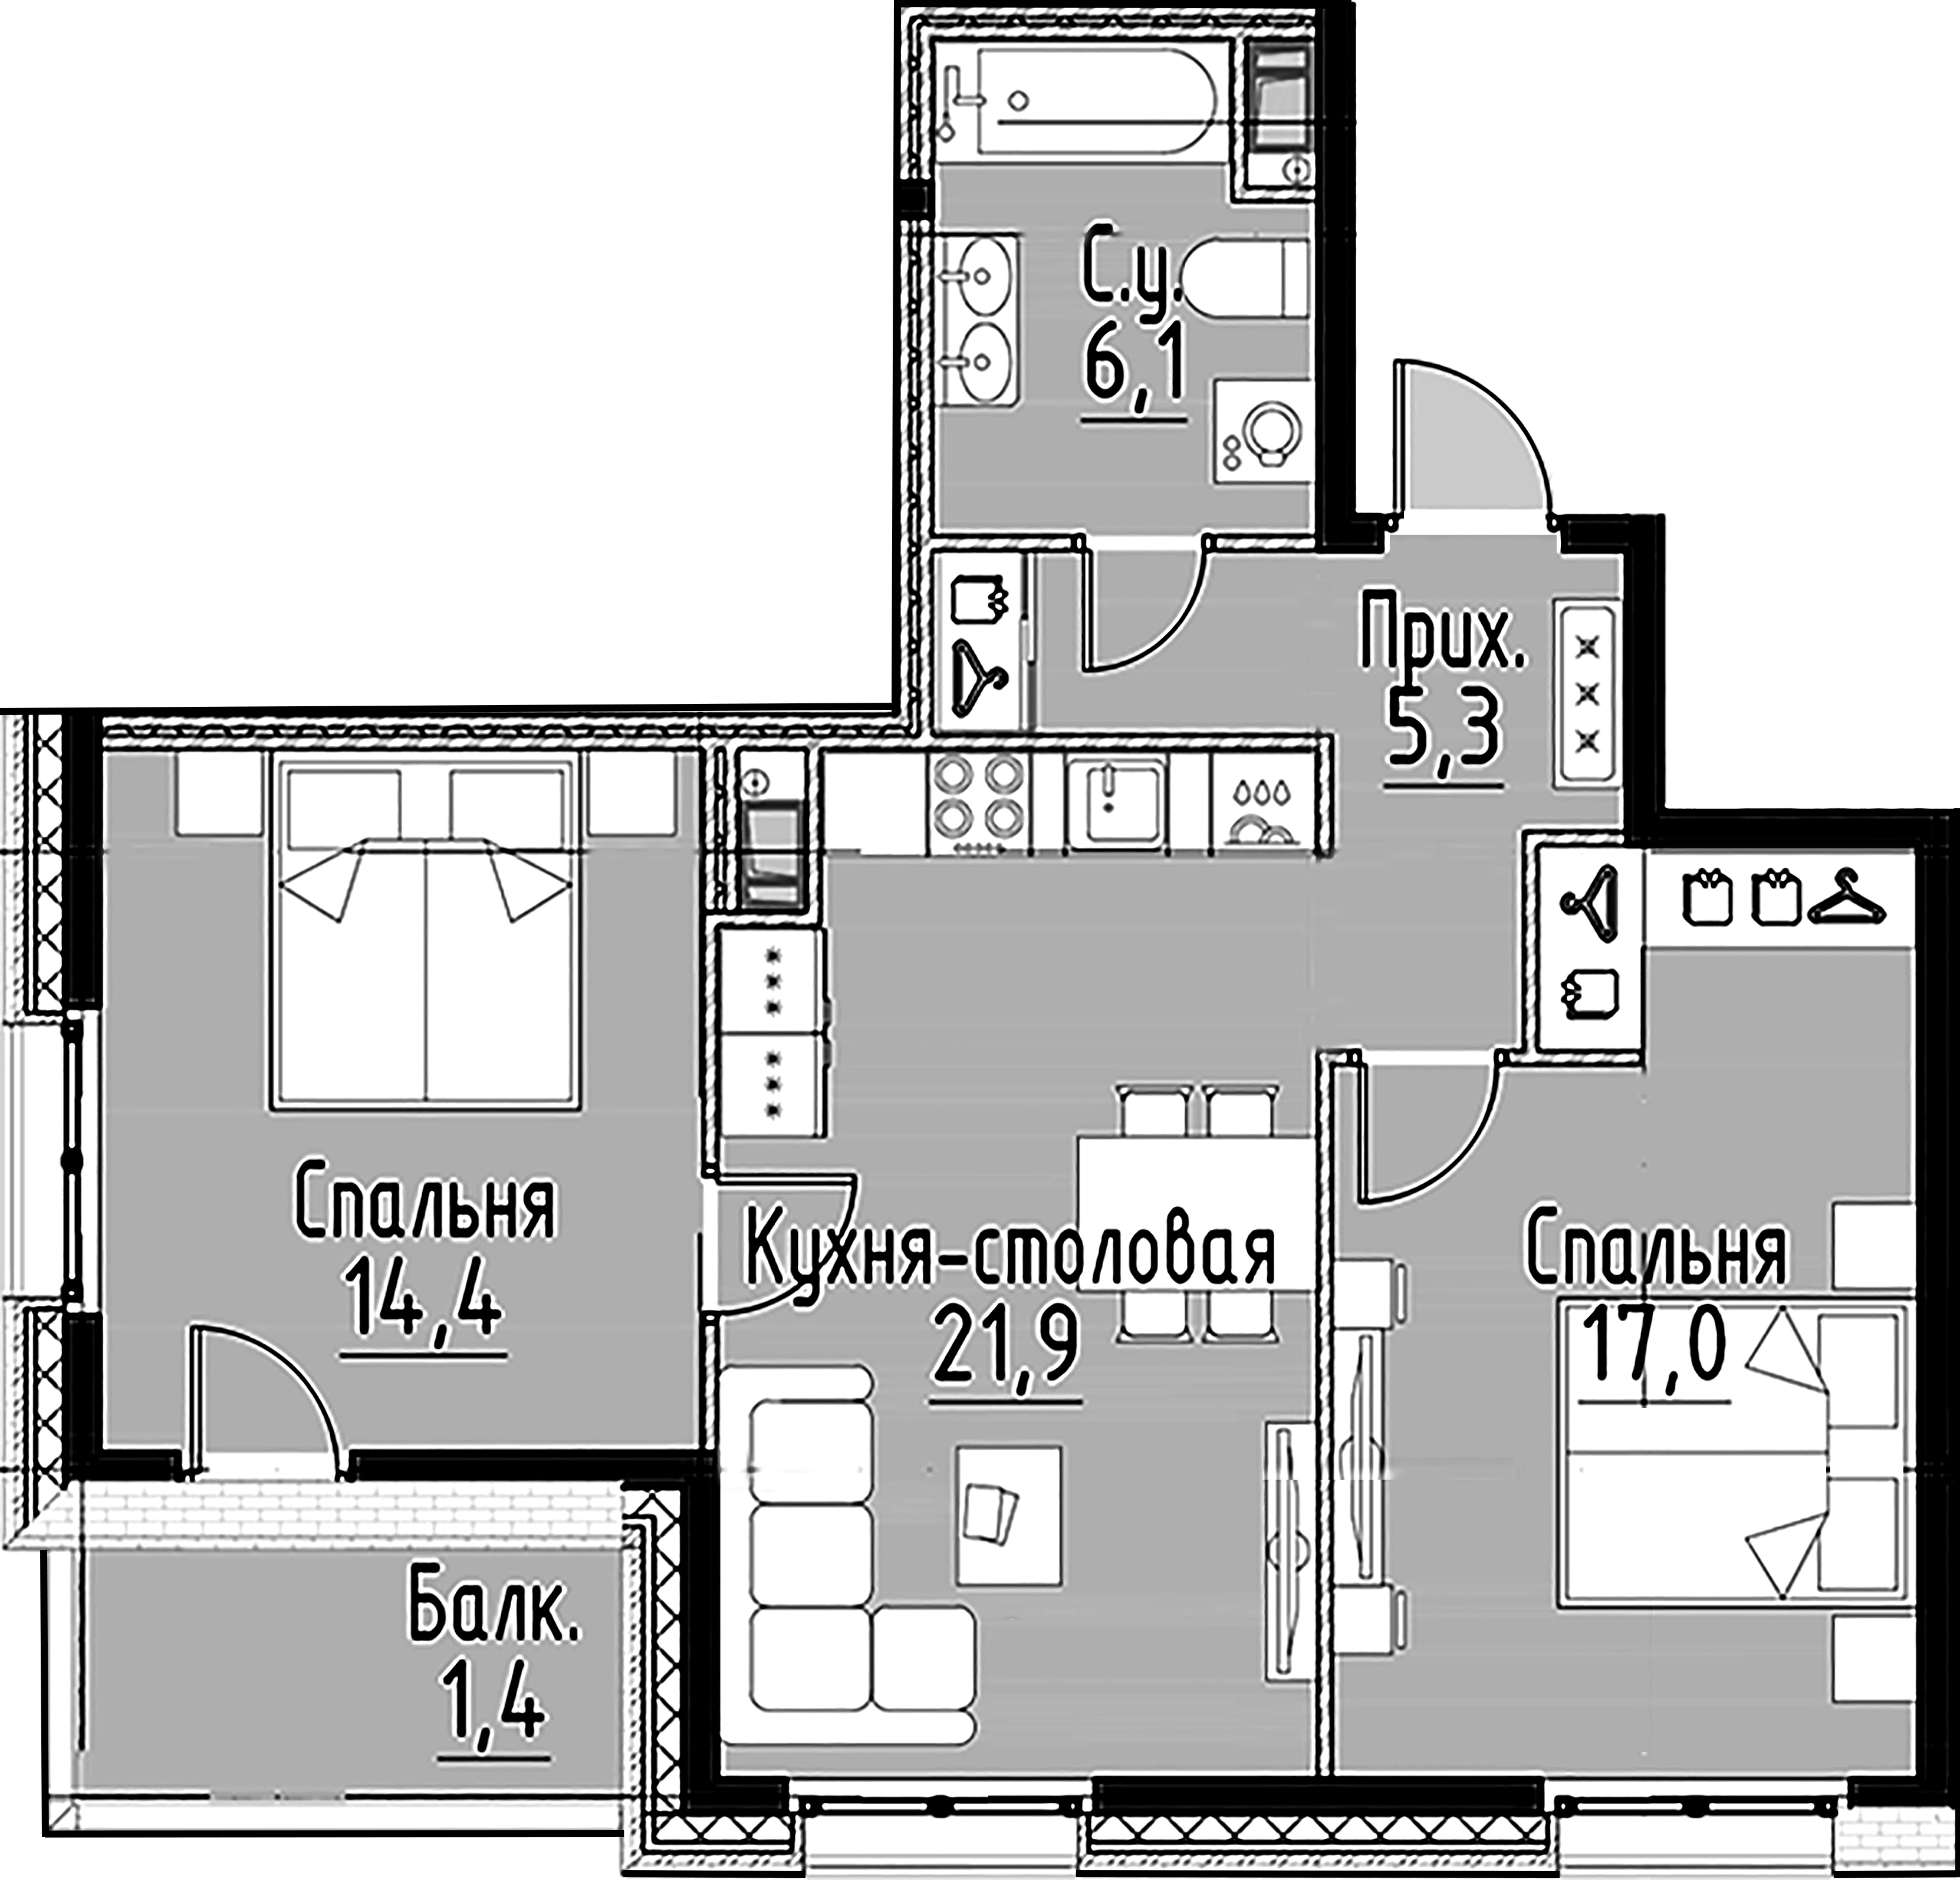 2-комнатная квартира  №88 в Моисеенко, 10: 64.8 м², этаж 8 - купить в Санкт-Петербурге